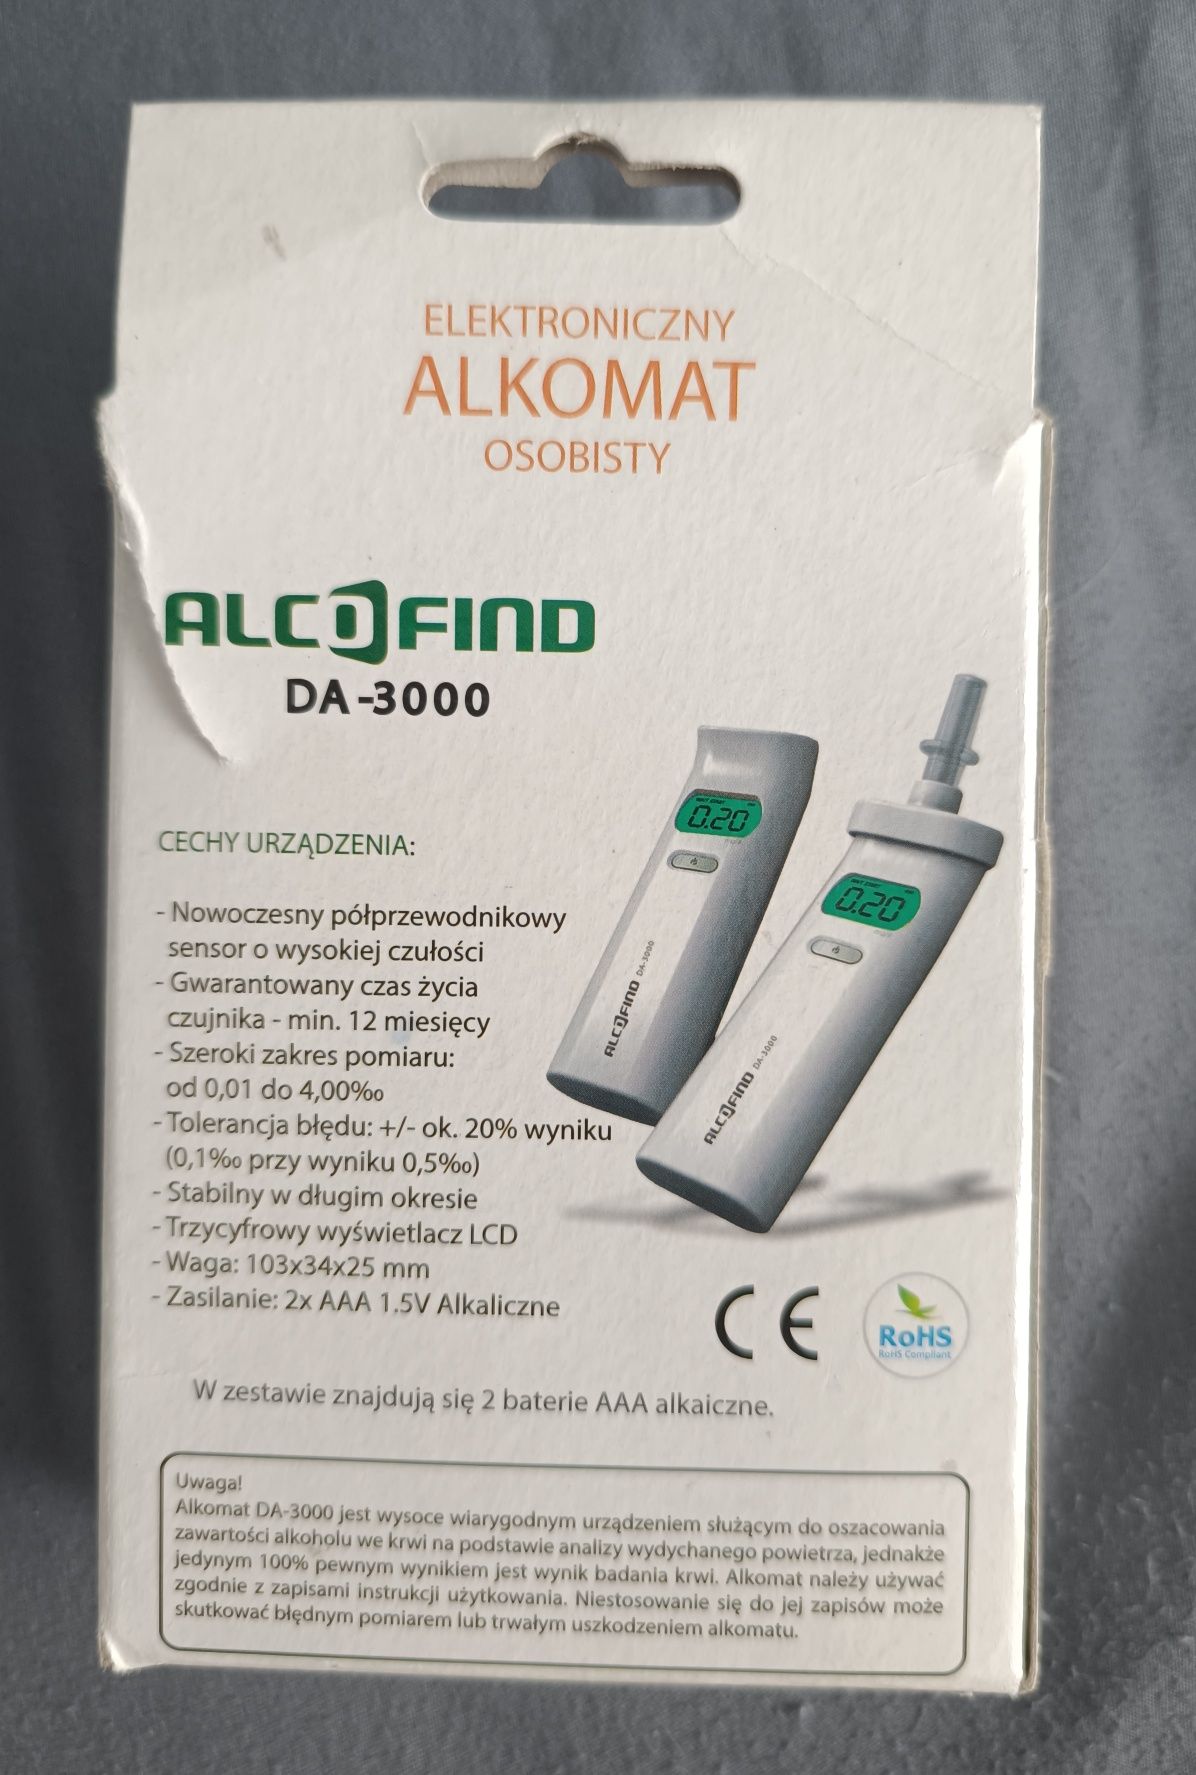 Alkomat podręczny AlcoFind DA-3000